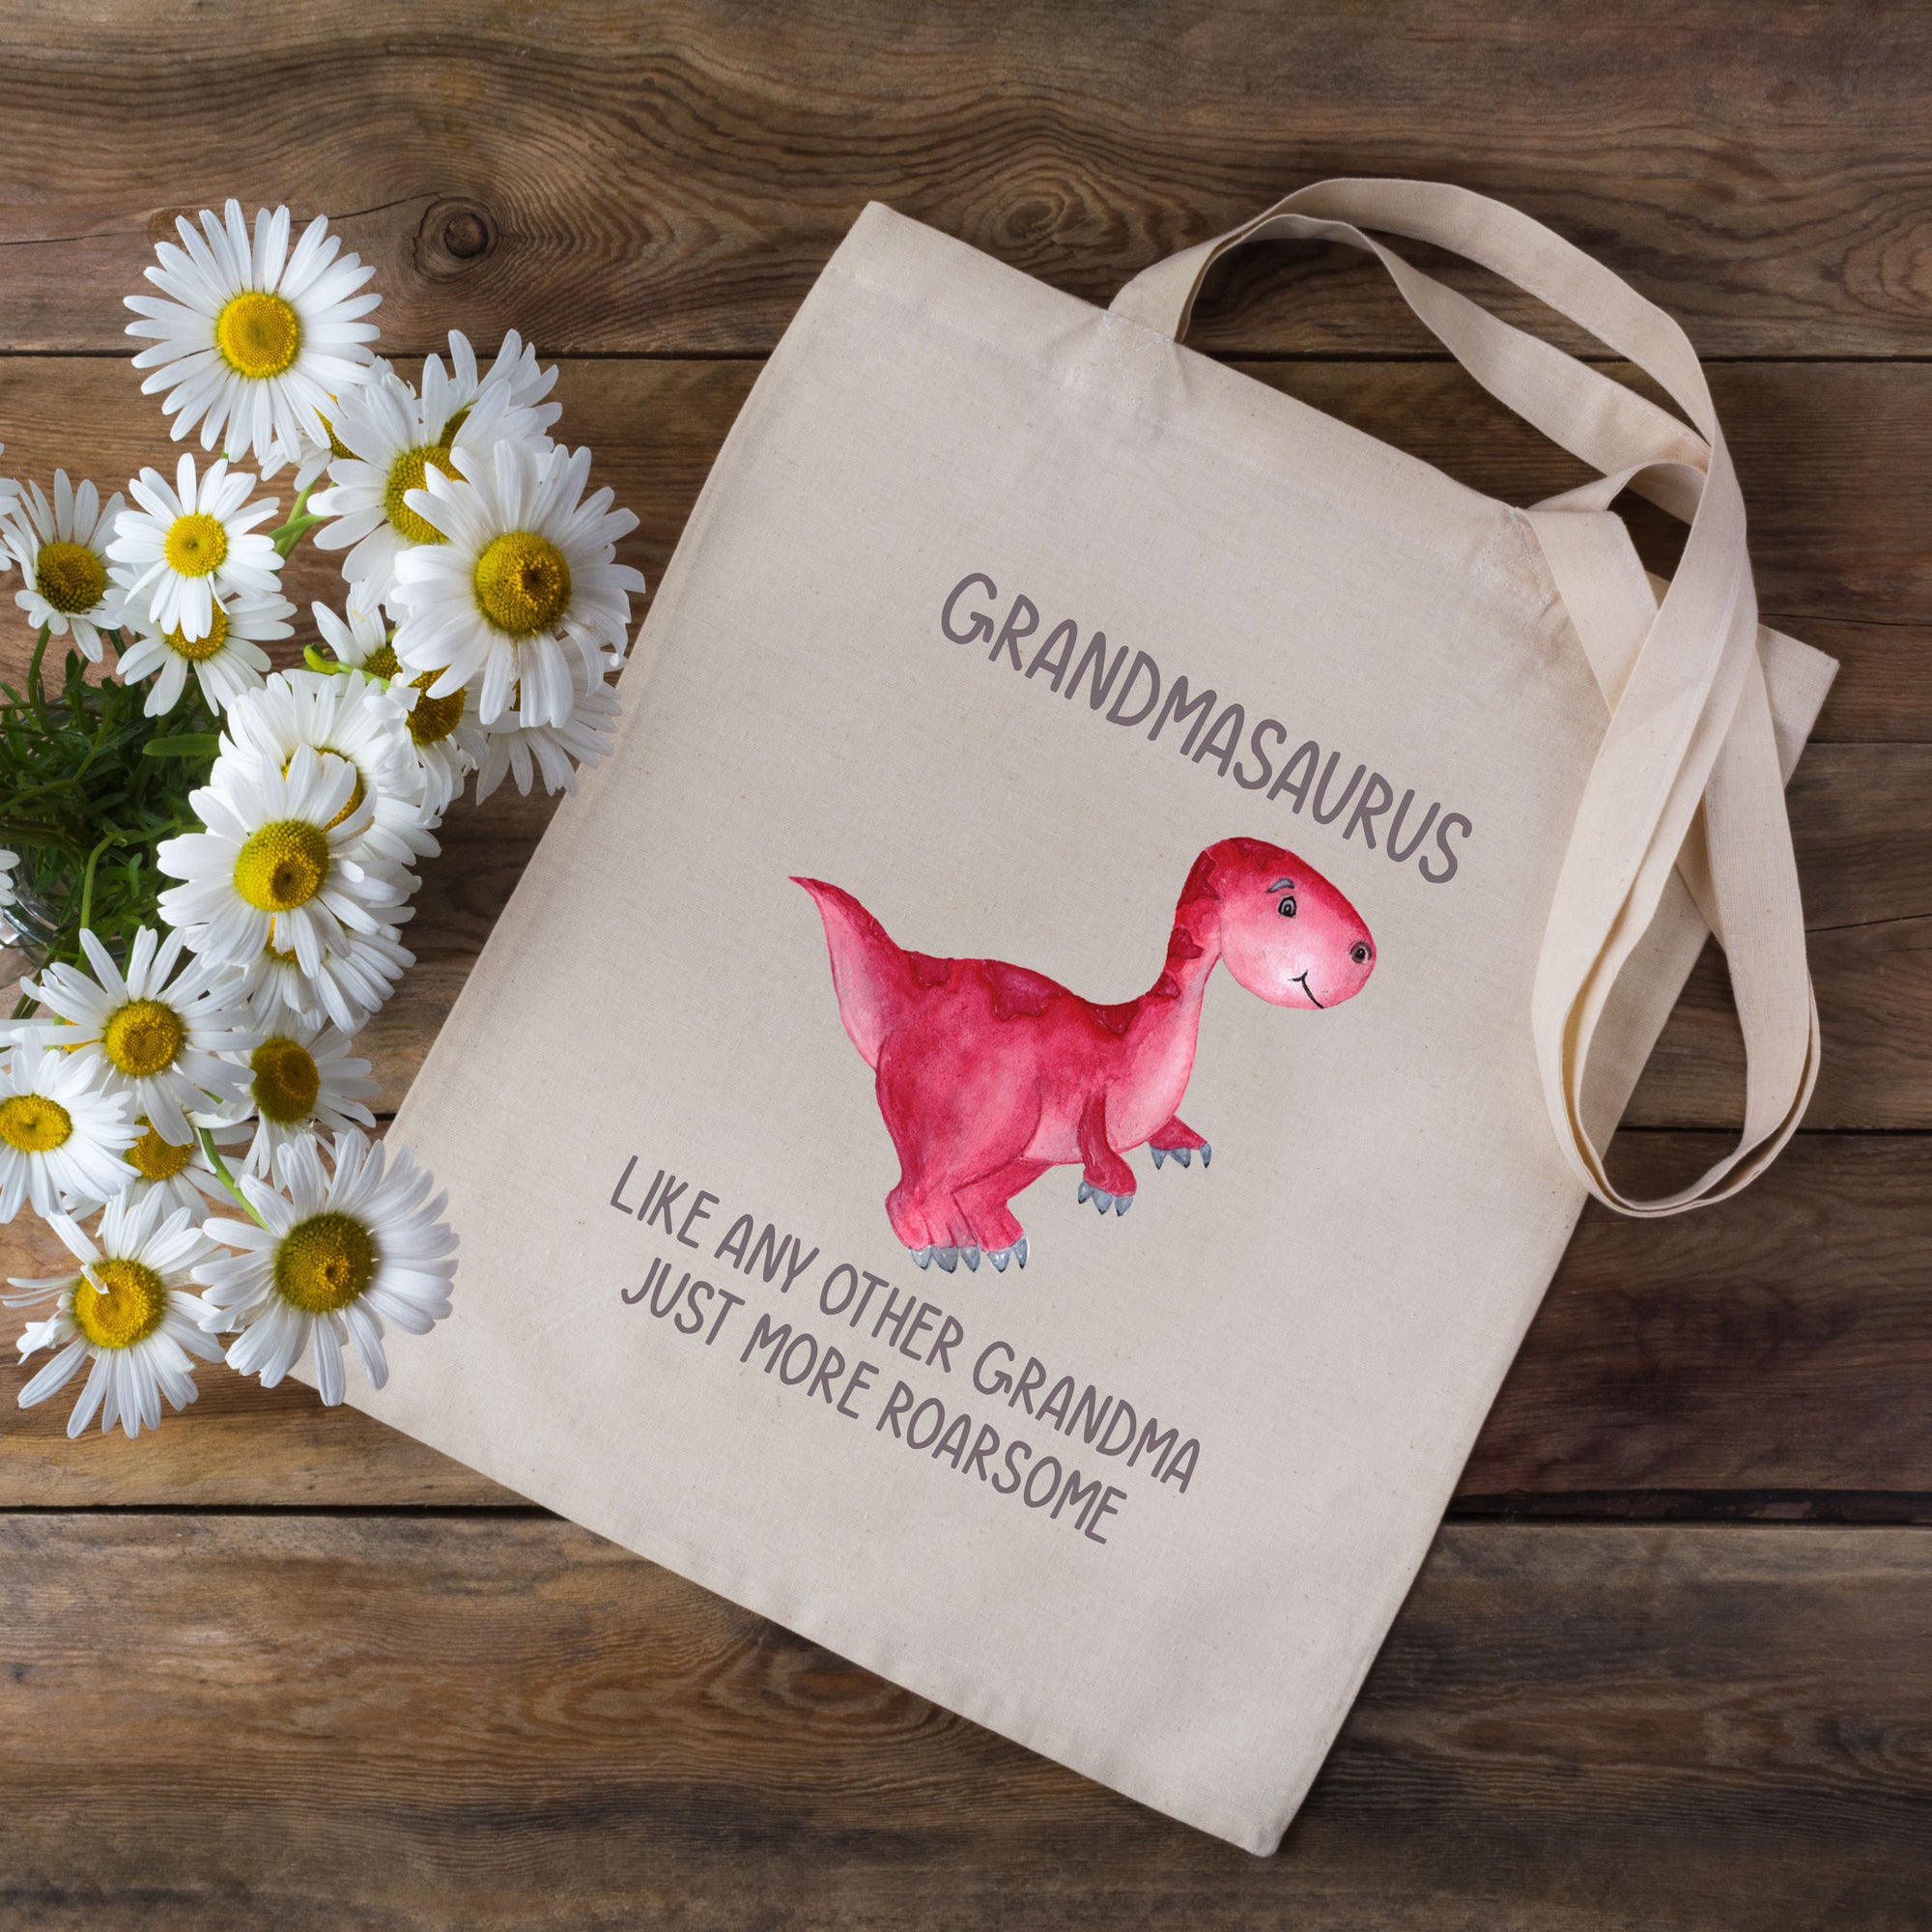 Grandmasaurus Tote Bag